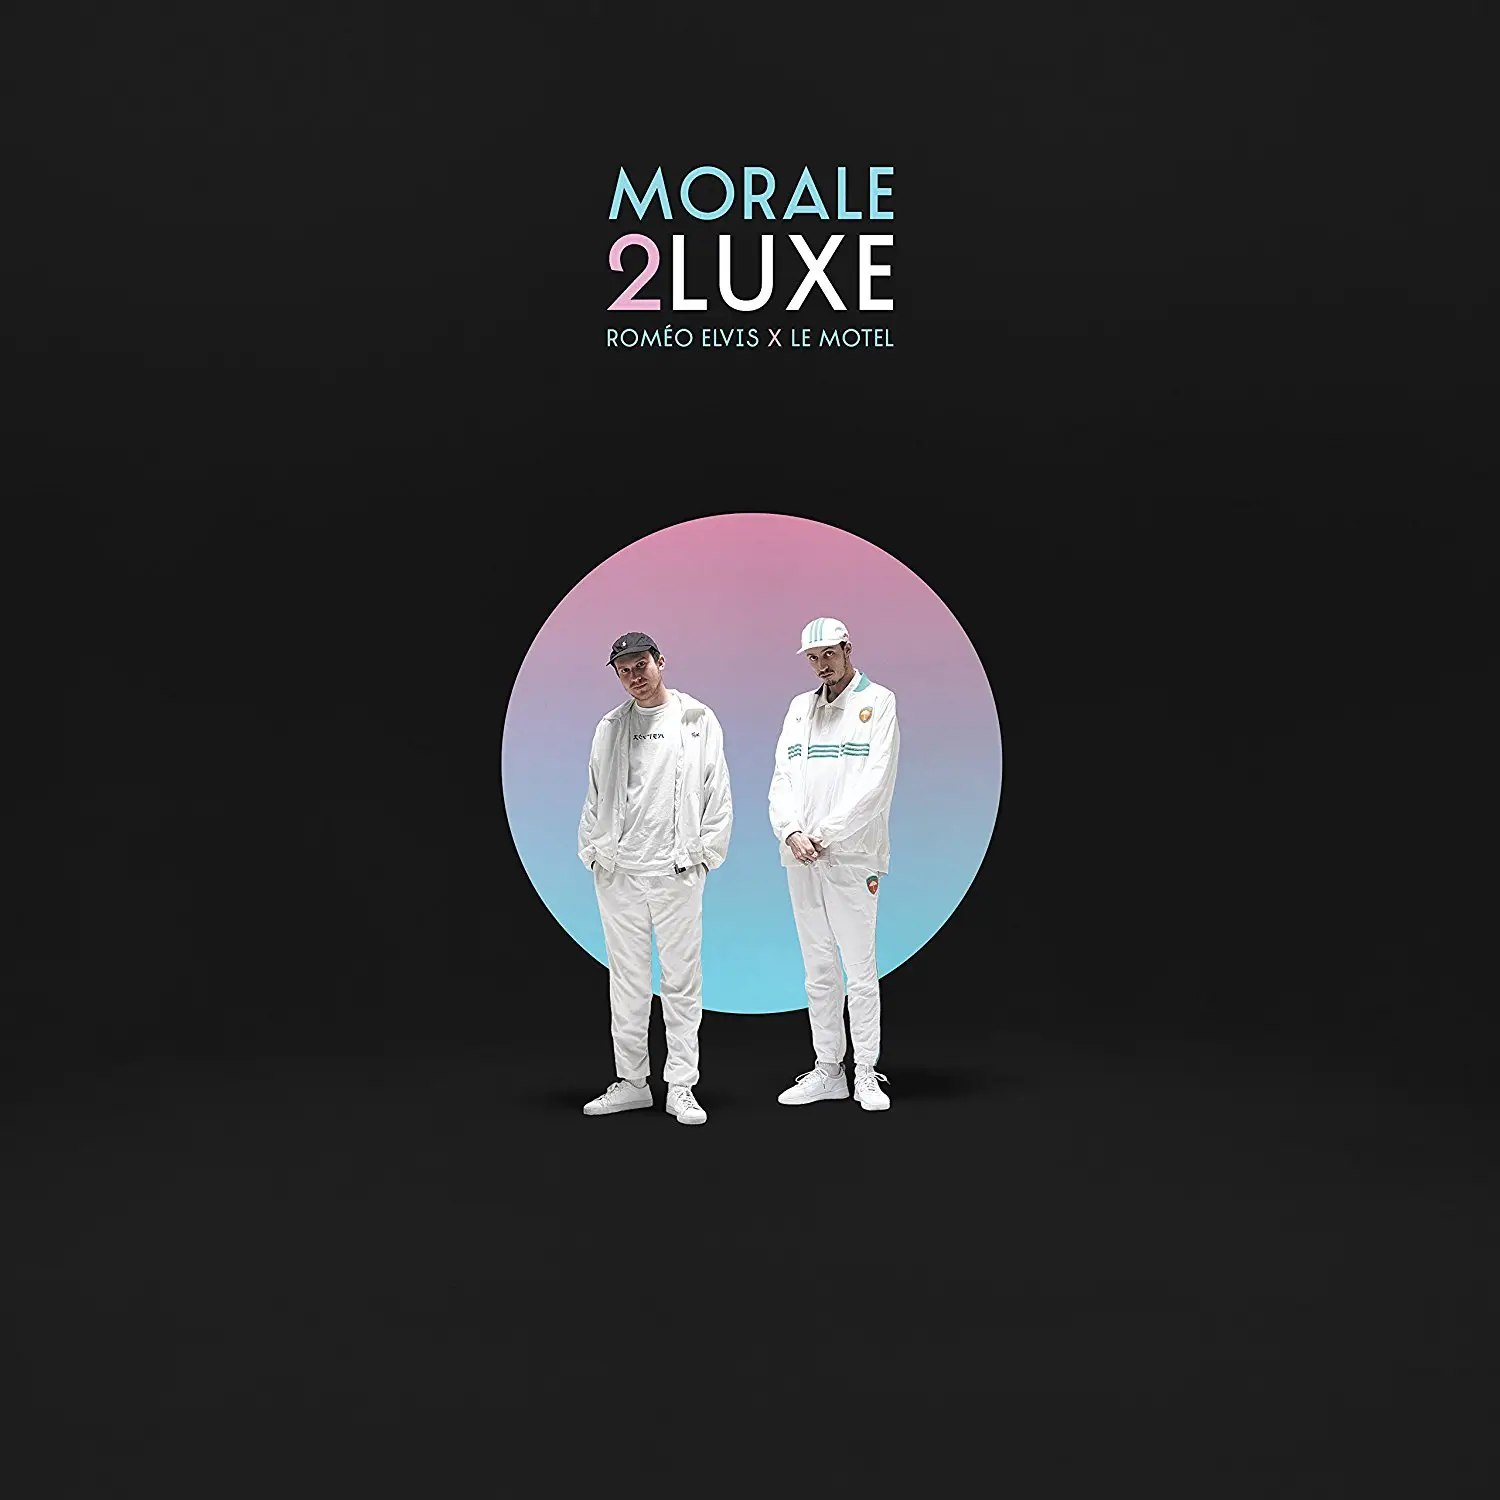 Morale 2luxe (2LP Gatefold - Tirage Limité) - Roméo Elvis